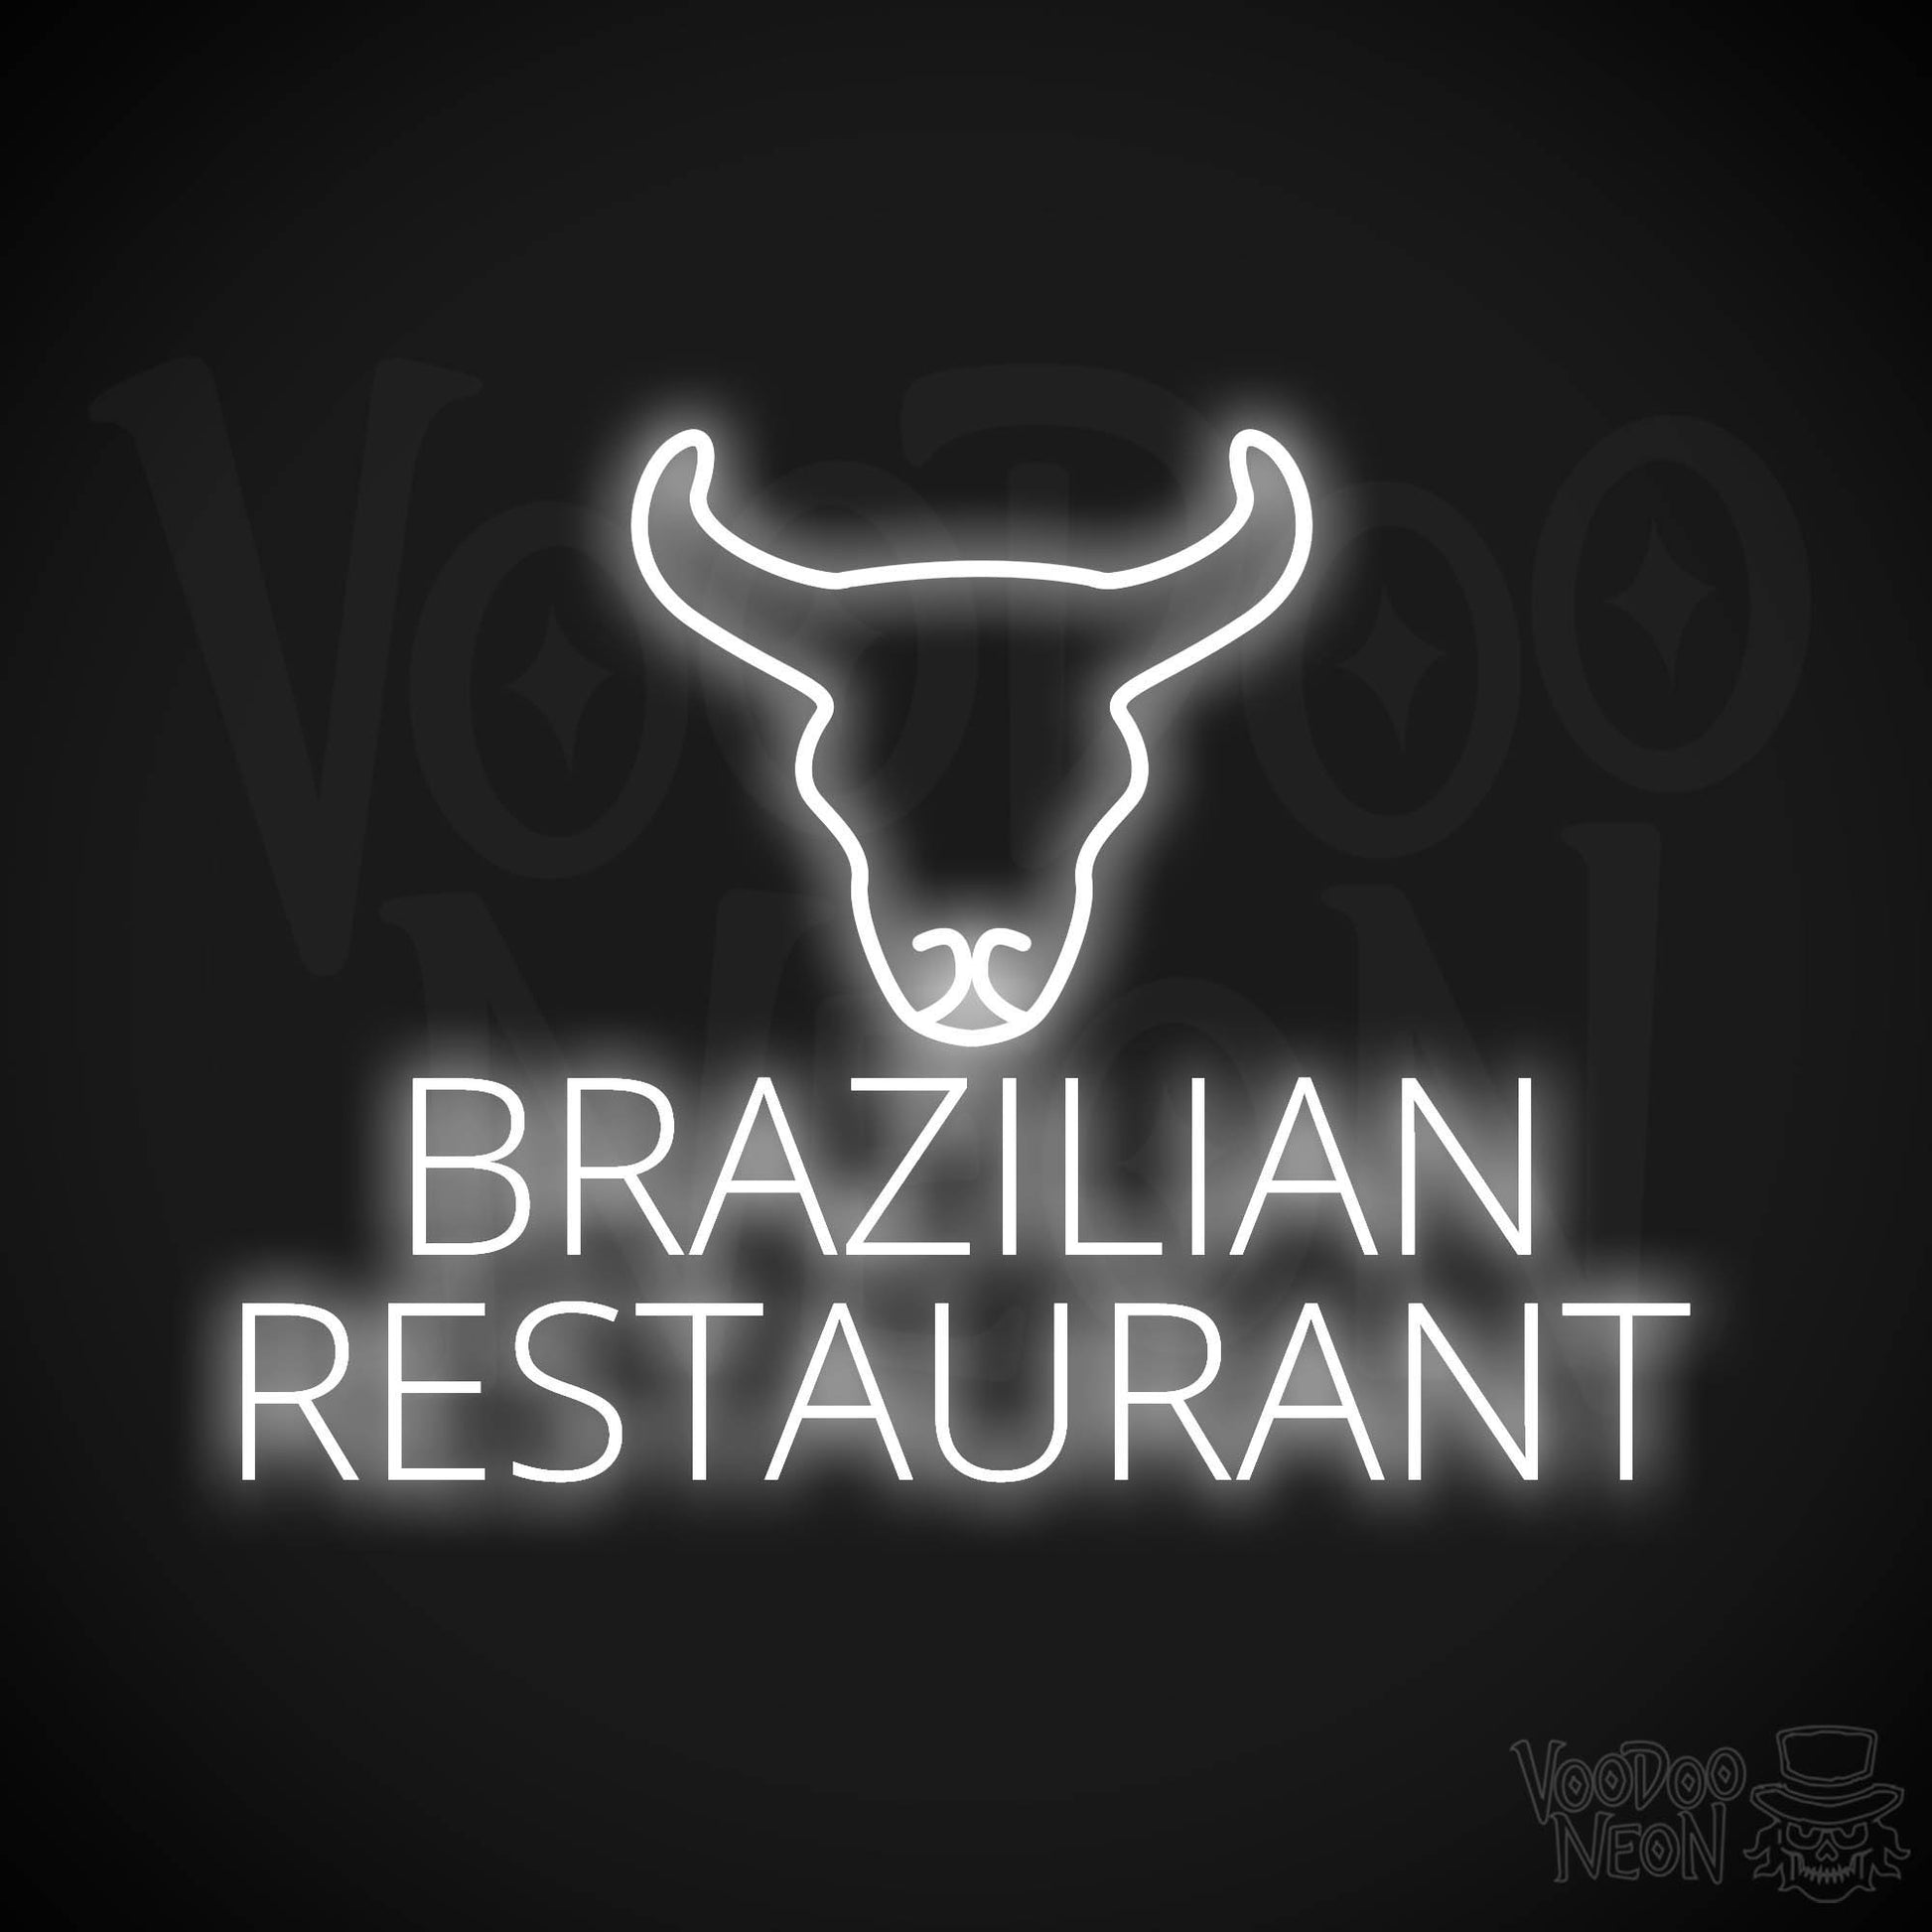 Brazilian Restaurant LED Neon - White